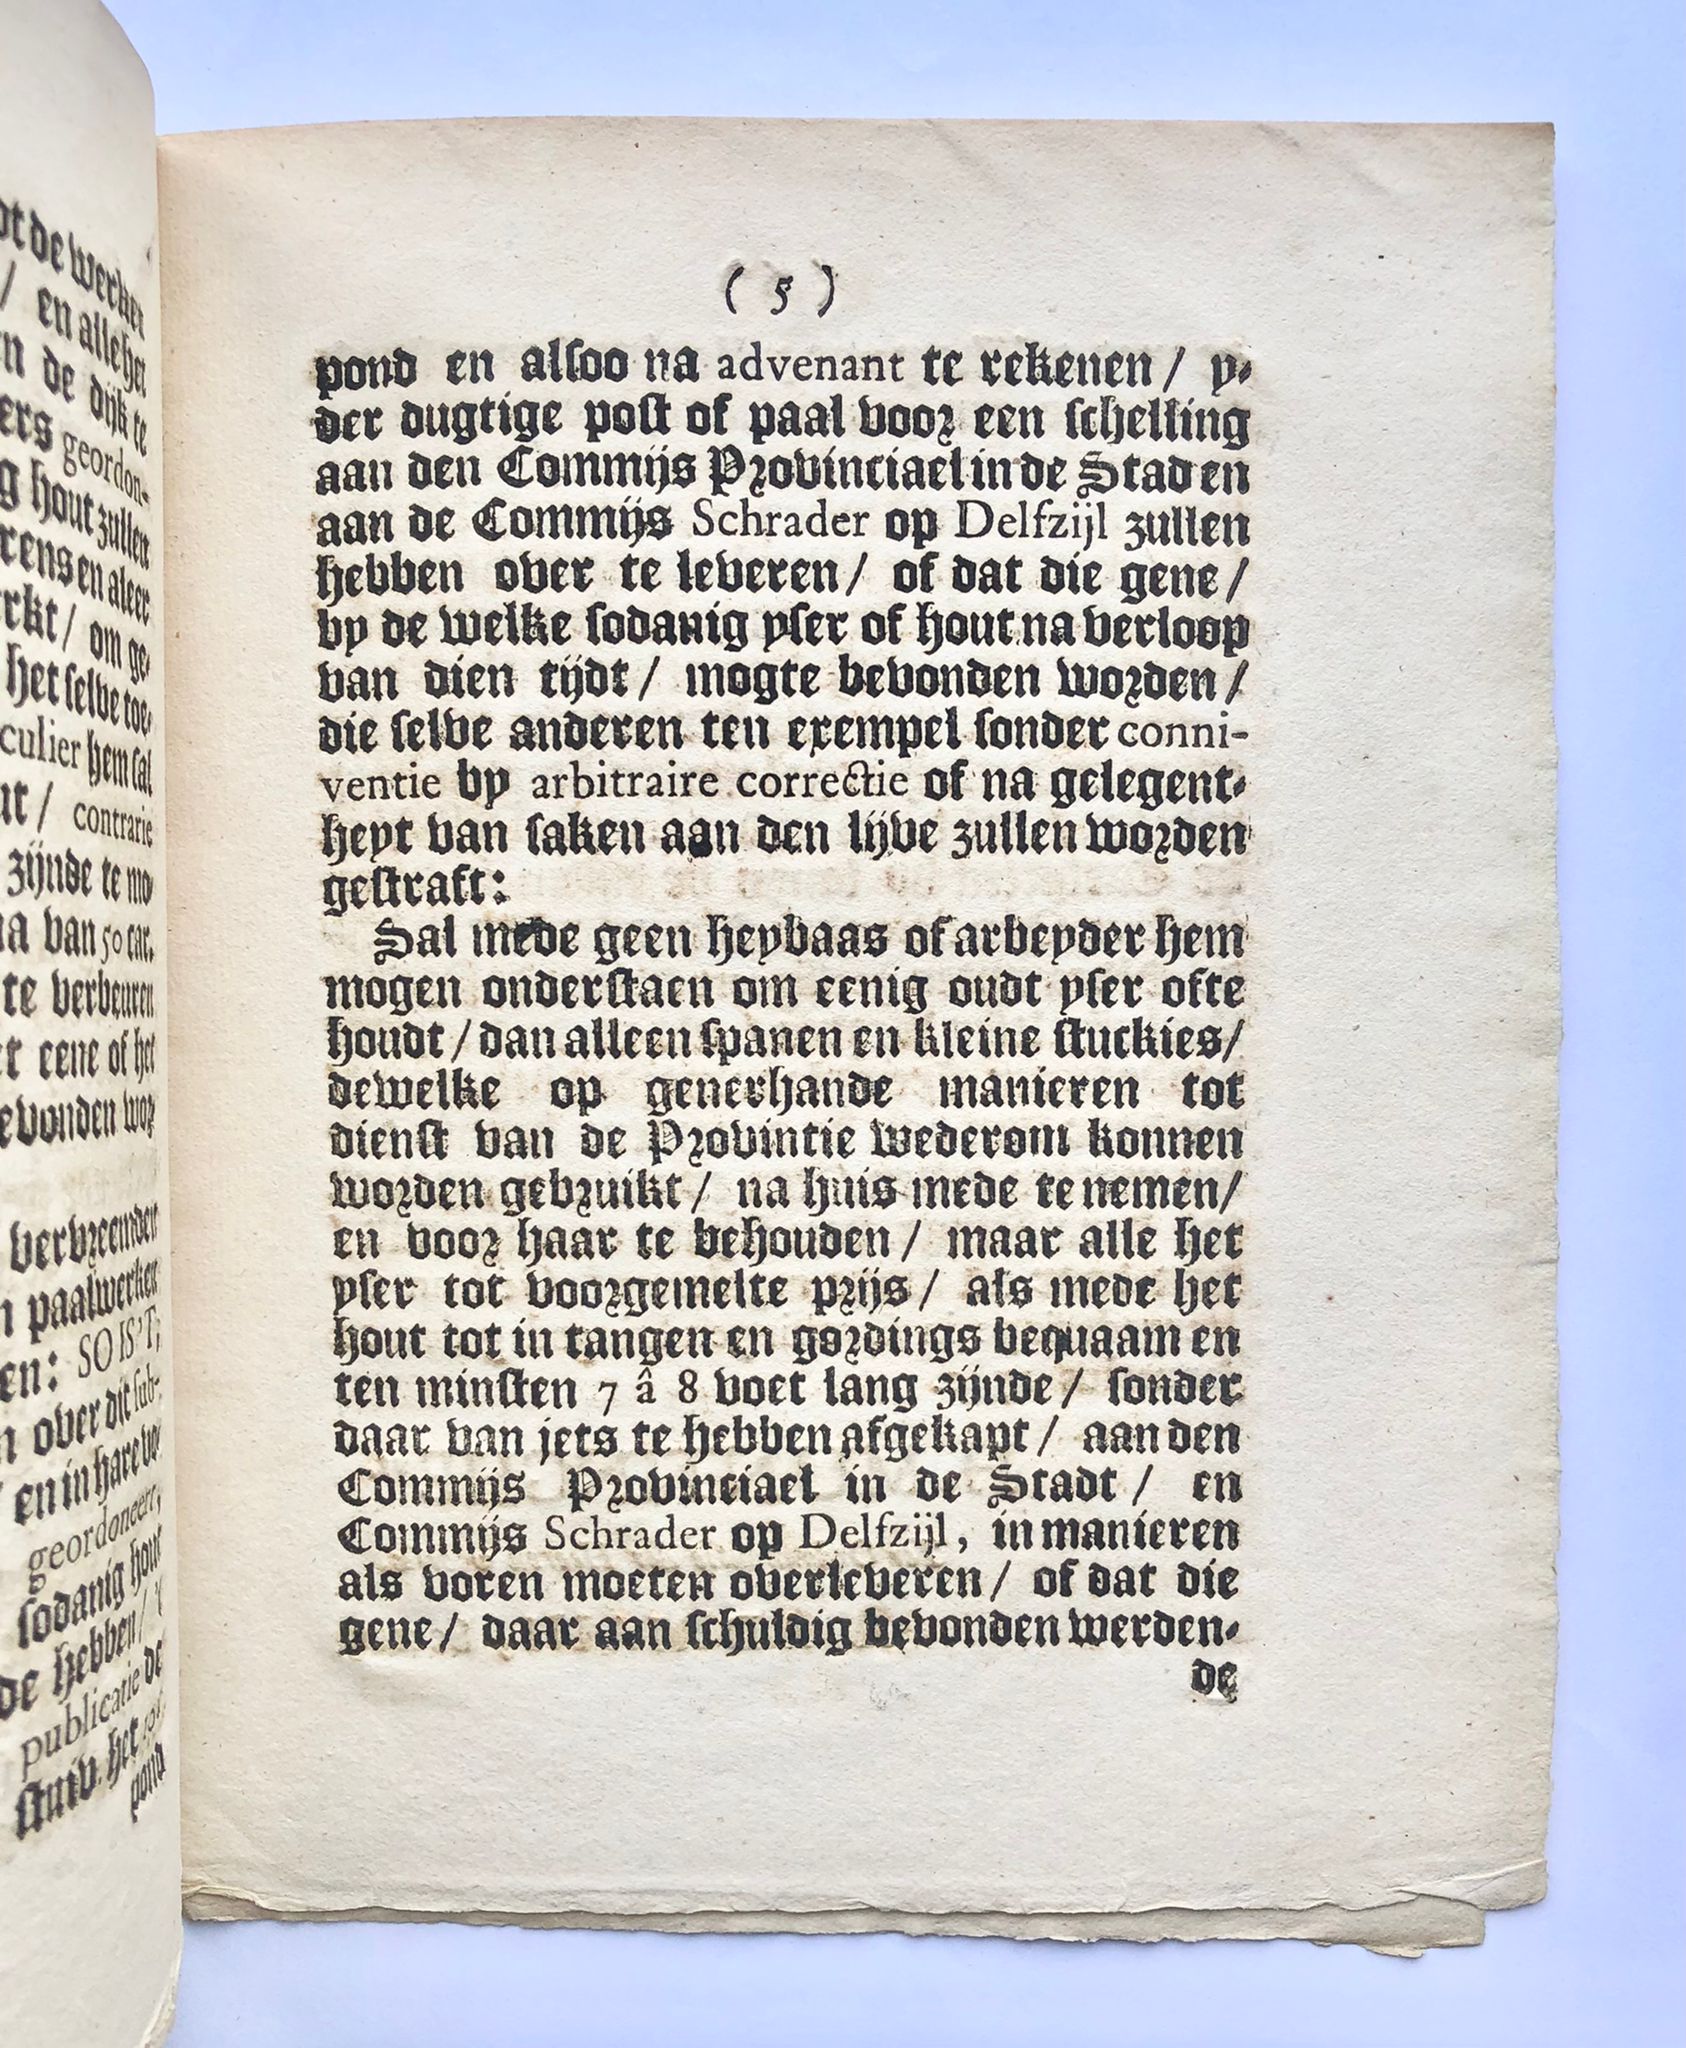 [Groningen, water management, 1740] De gedeputeerde Staten van Stadt Groningen en Ommelanden doen te weten. Hoe wy met leedwesen vernemen (...), 1740, 6 pp.